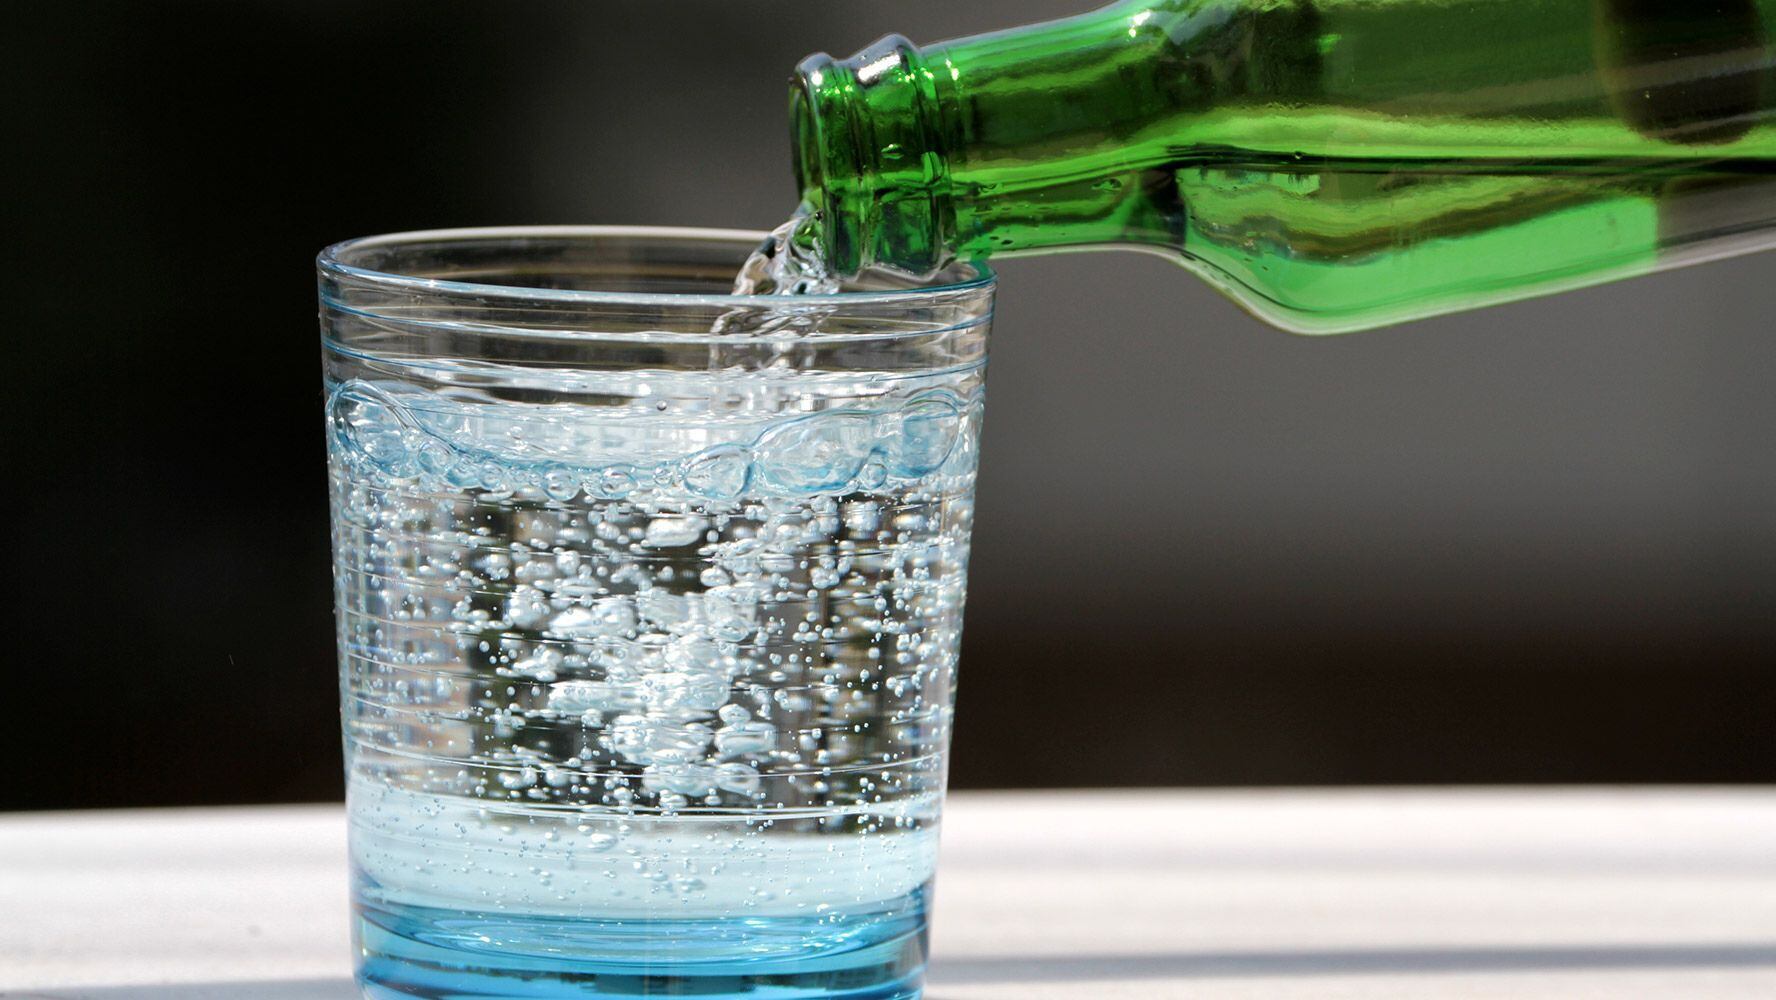 El agua mineral podría tener efectos negativos en la salud si se consume excesivamente. (Foto: Shutterstock)